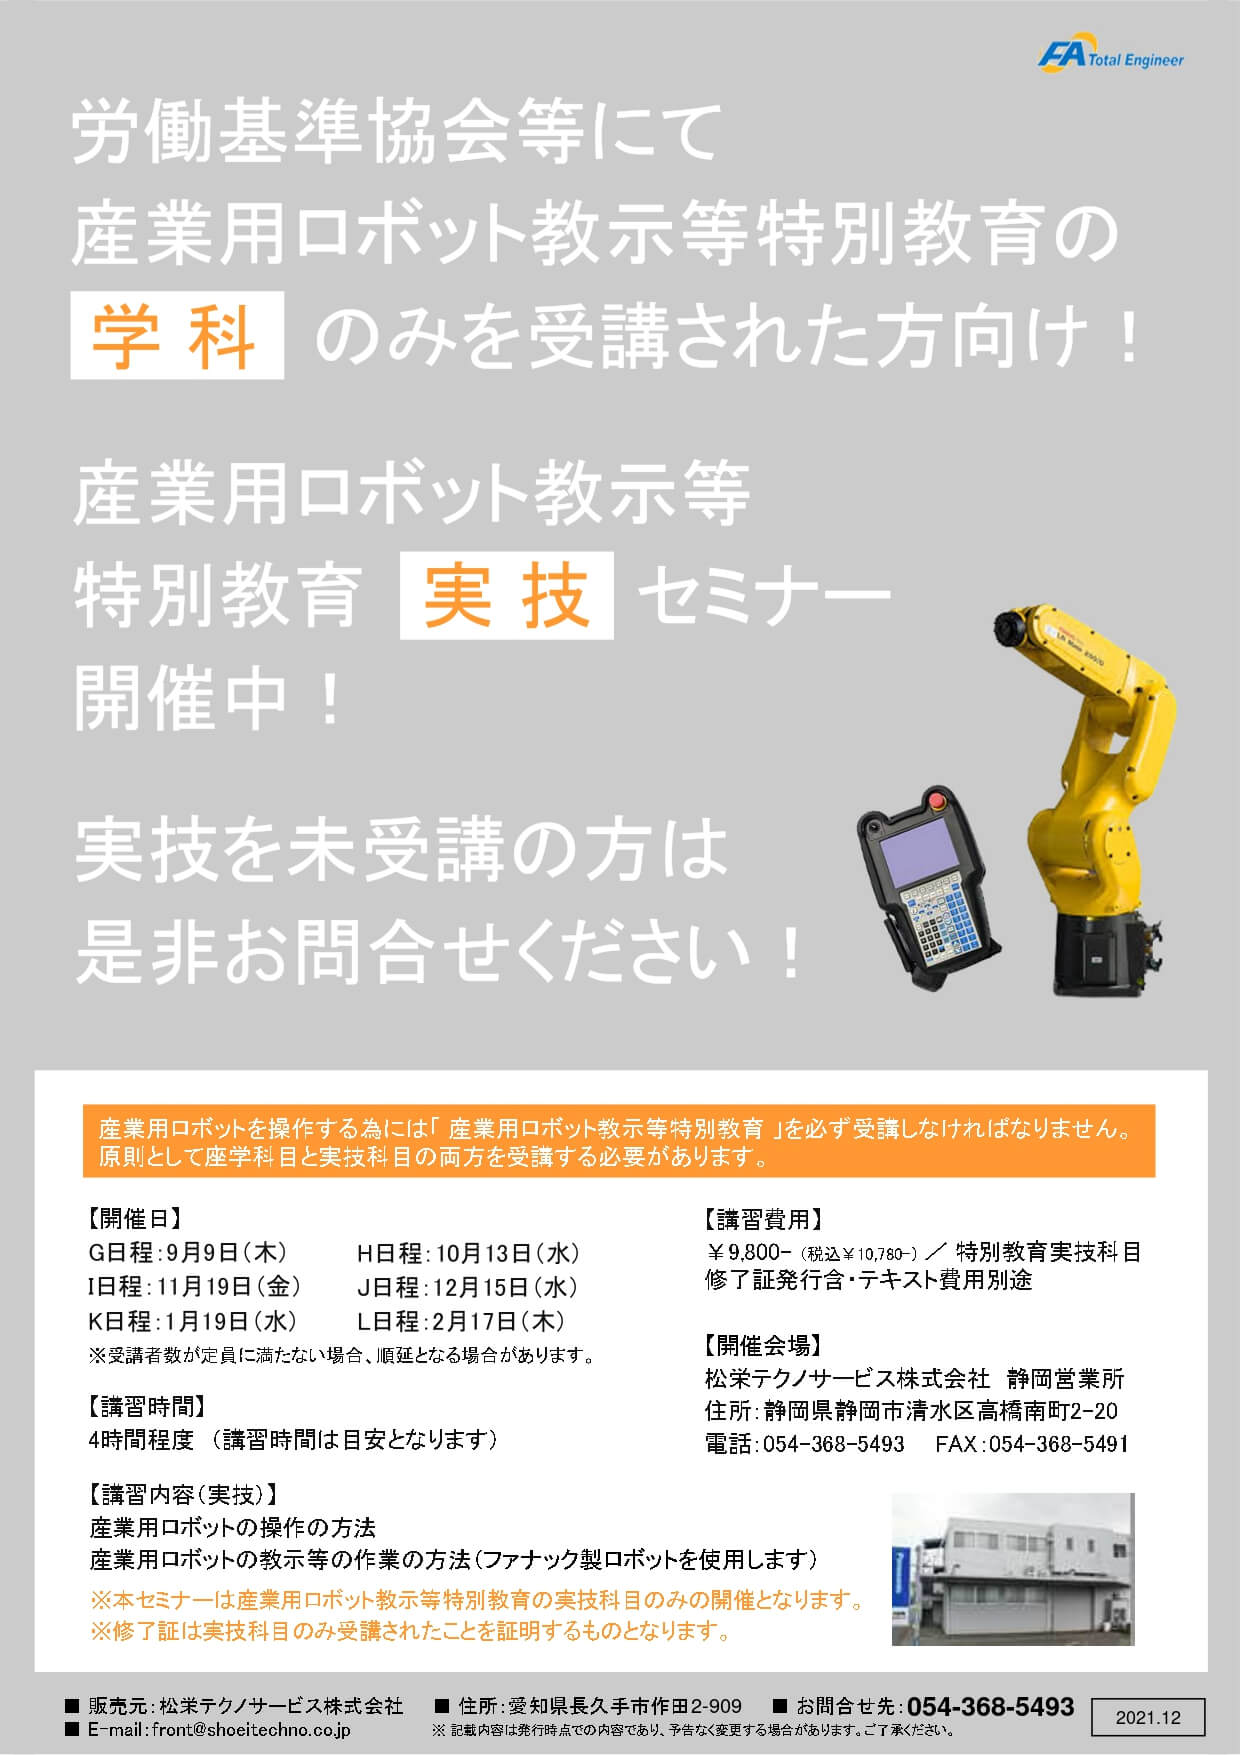 【終了しました】産業用ロボット特別教育（教示等）静岡会場開催のお知らせ【2021年9月～2022年2月】